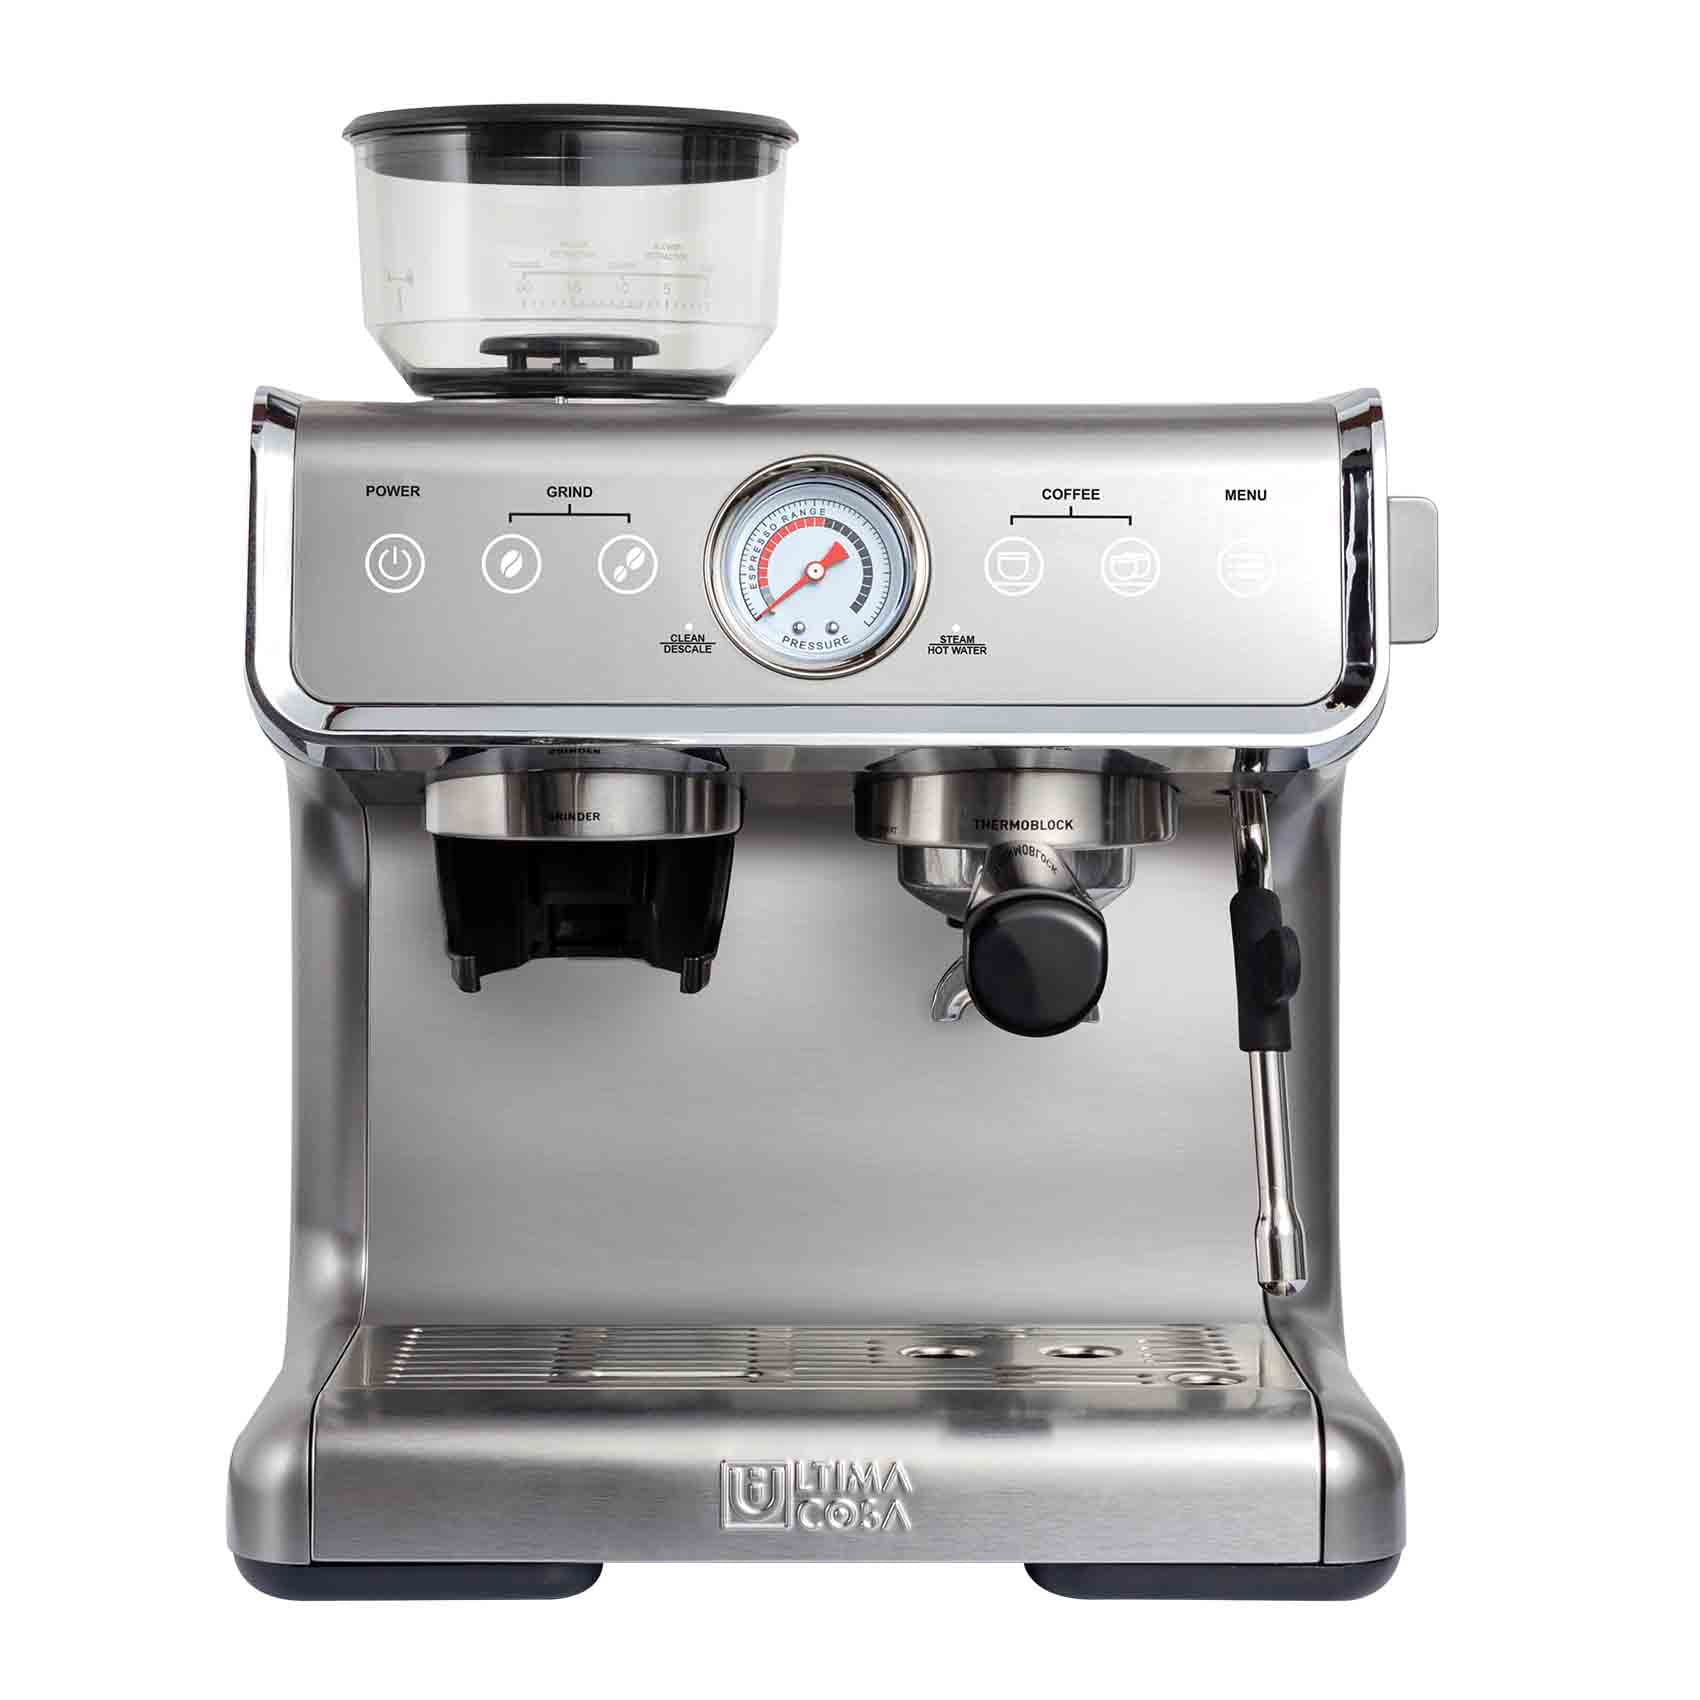 Ultima Cosa New Presto Bollente Semi-Automatic Espresso Machine - Silver -  2 Litre Water Tank 